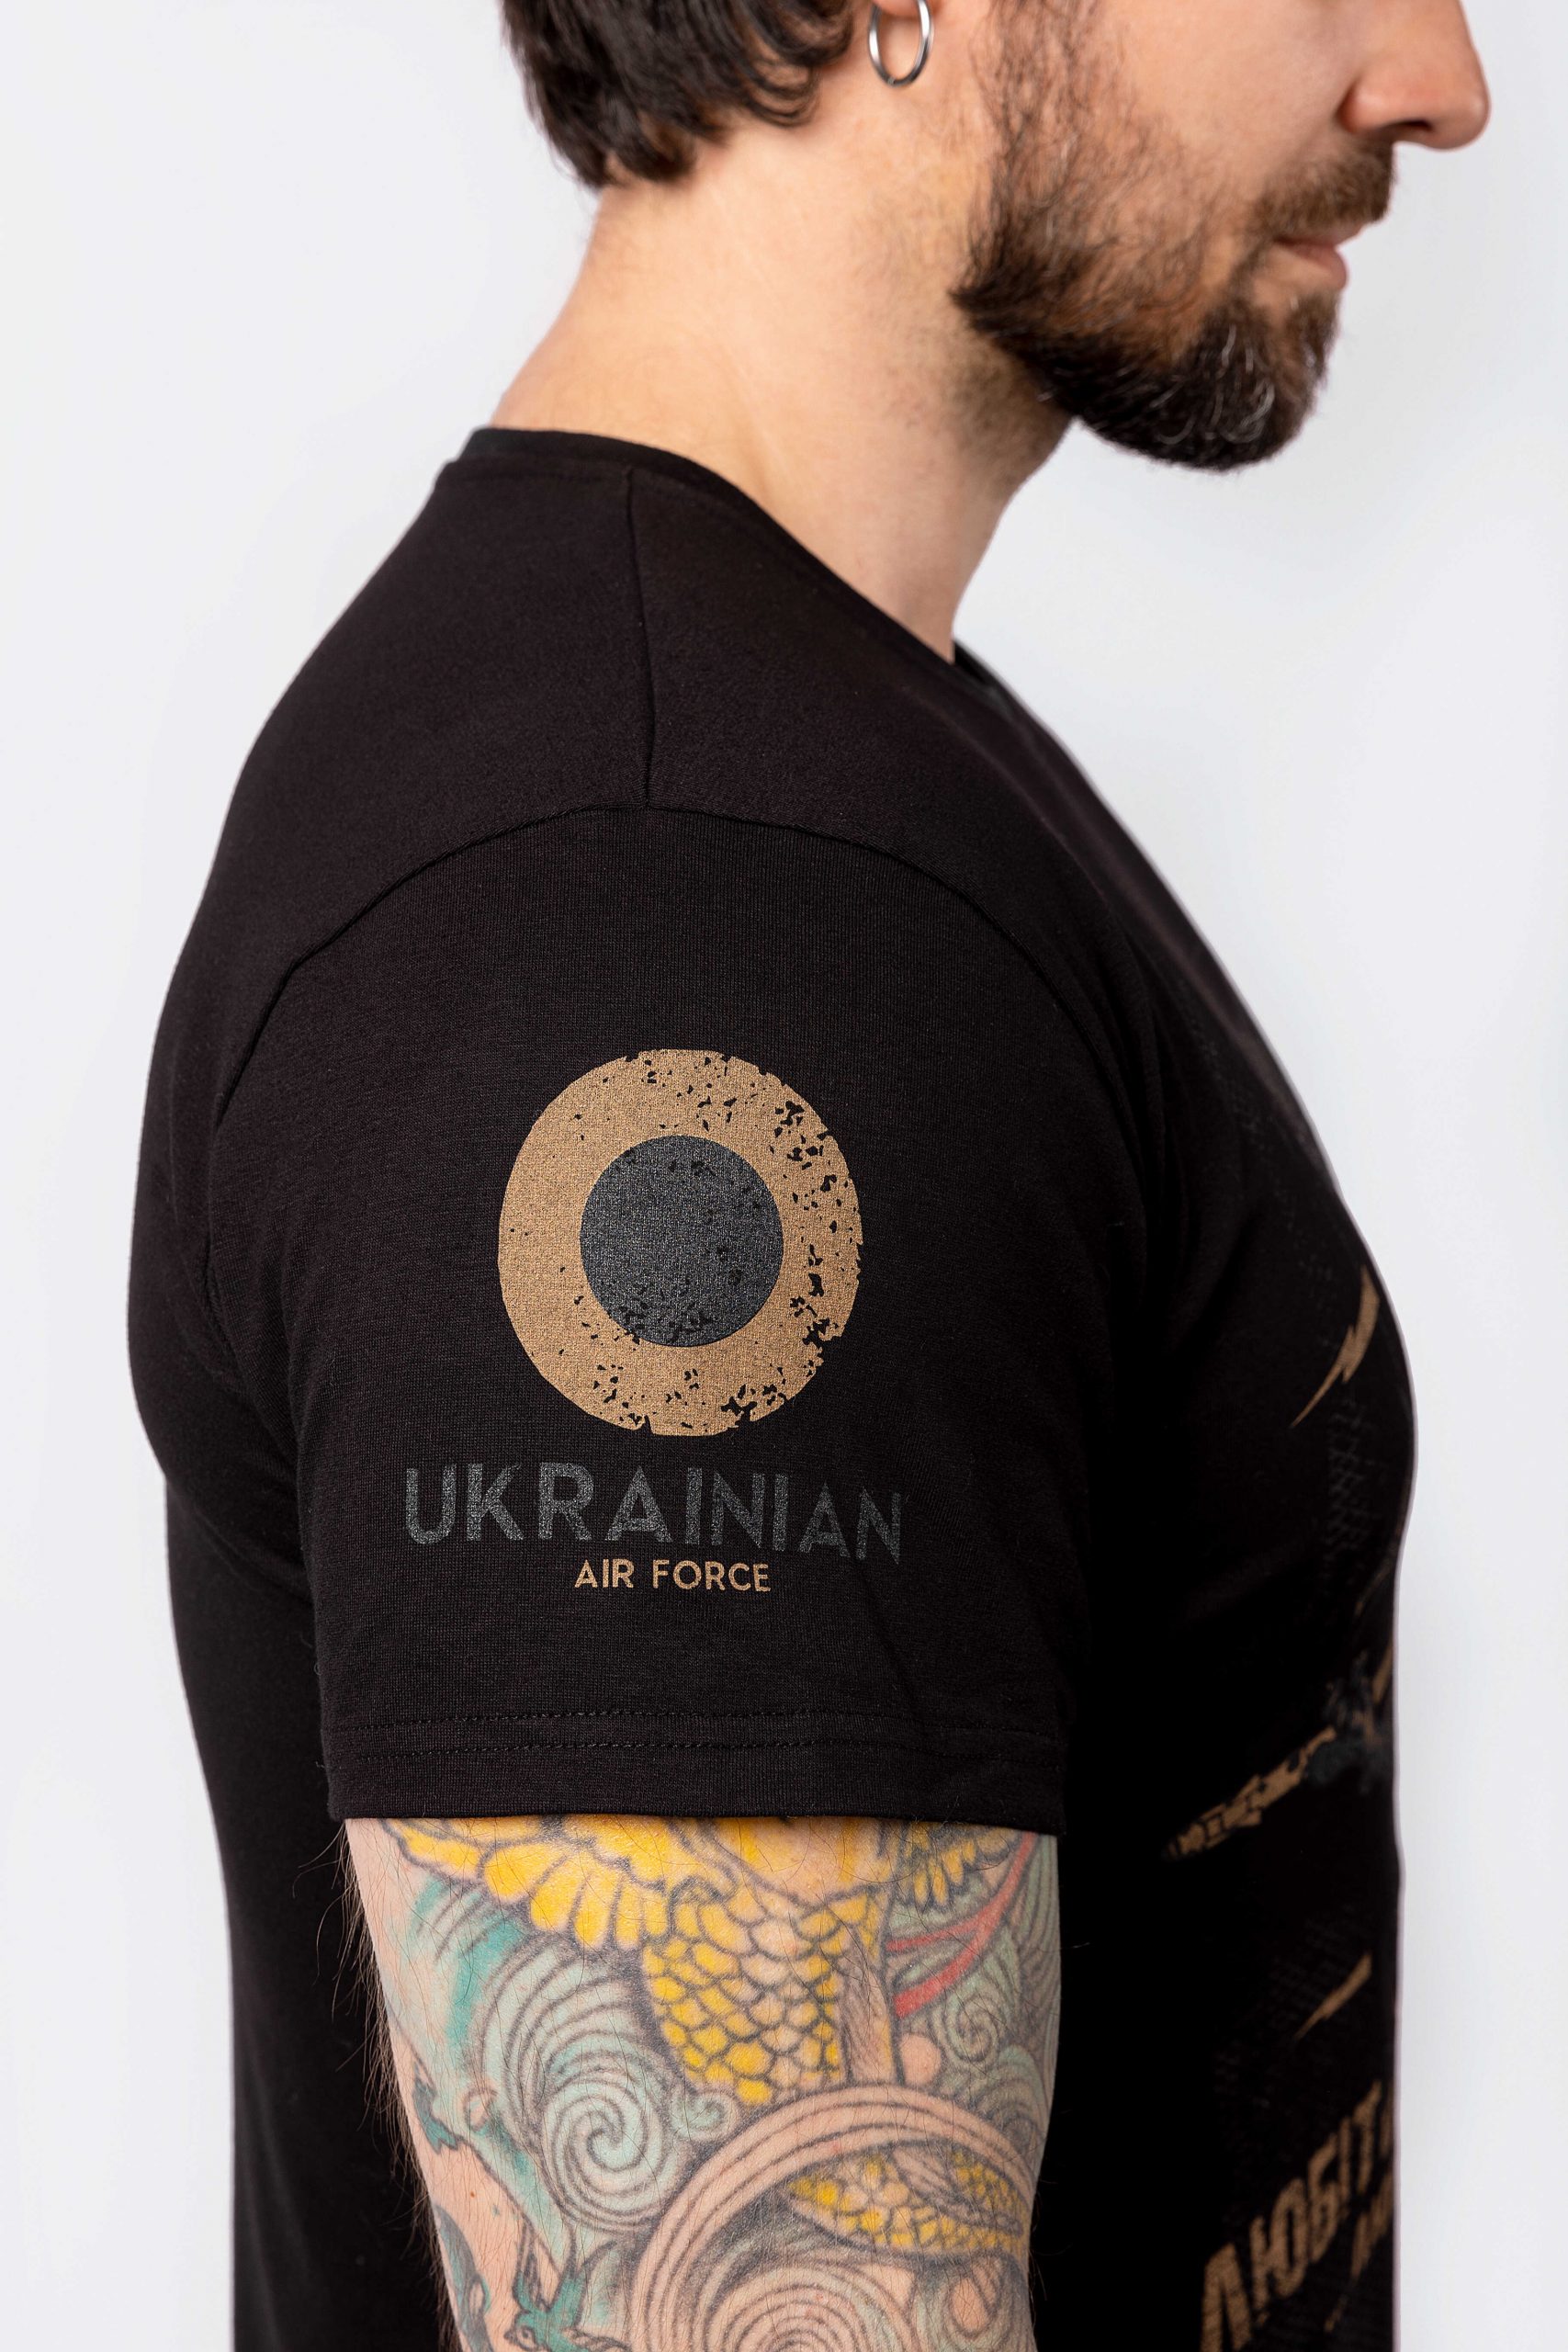 Men's T-Shirt Griffon. Color black. 
Size worn by the model: L.